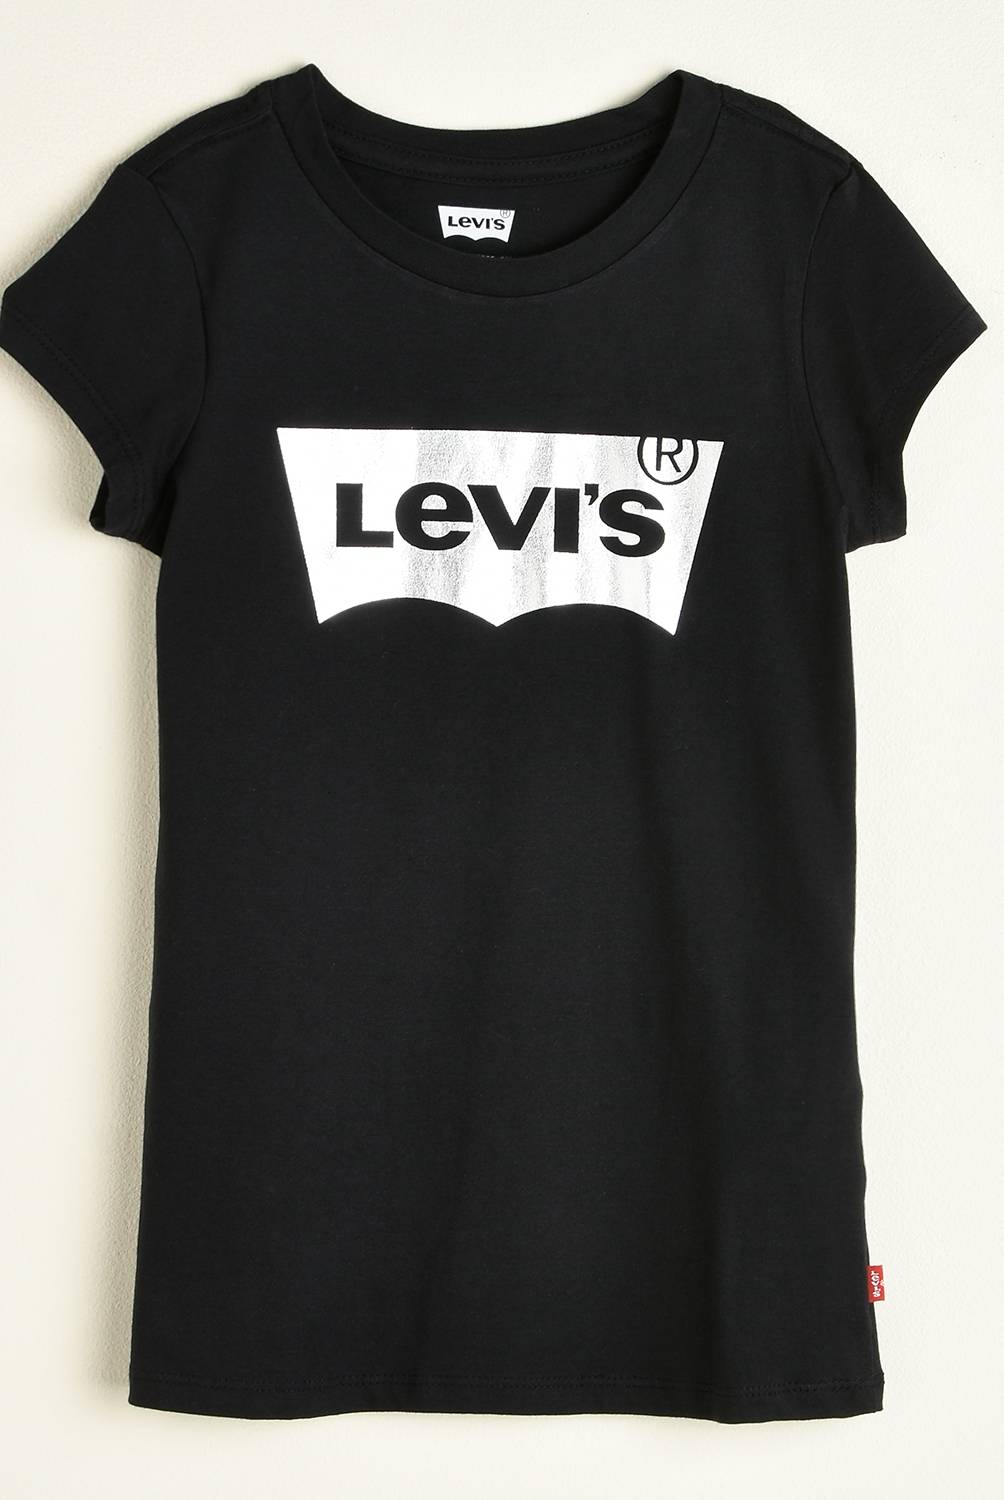 LEVIS KIDS - Camiseta Niña Juvenil Levis Kids